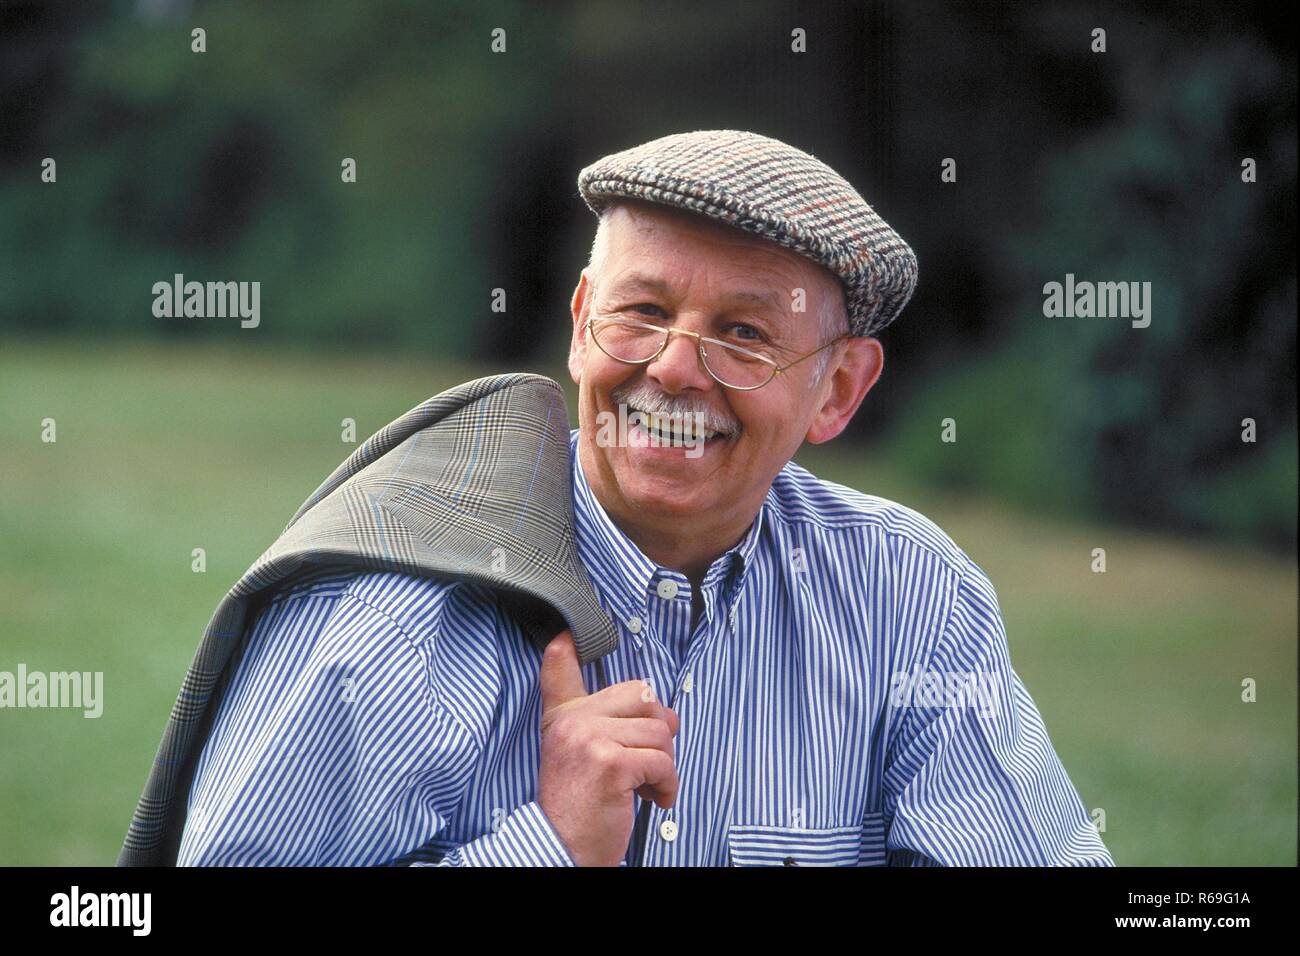 Portrait, Outdoor, laechelnder Senior mit Schnauzbart, ca 75 Jahre alt, bekleidet mit blau-weiss gestreiftem Hemd, Schiebermuetze und Brille Stock Photo